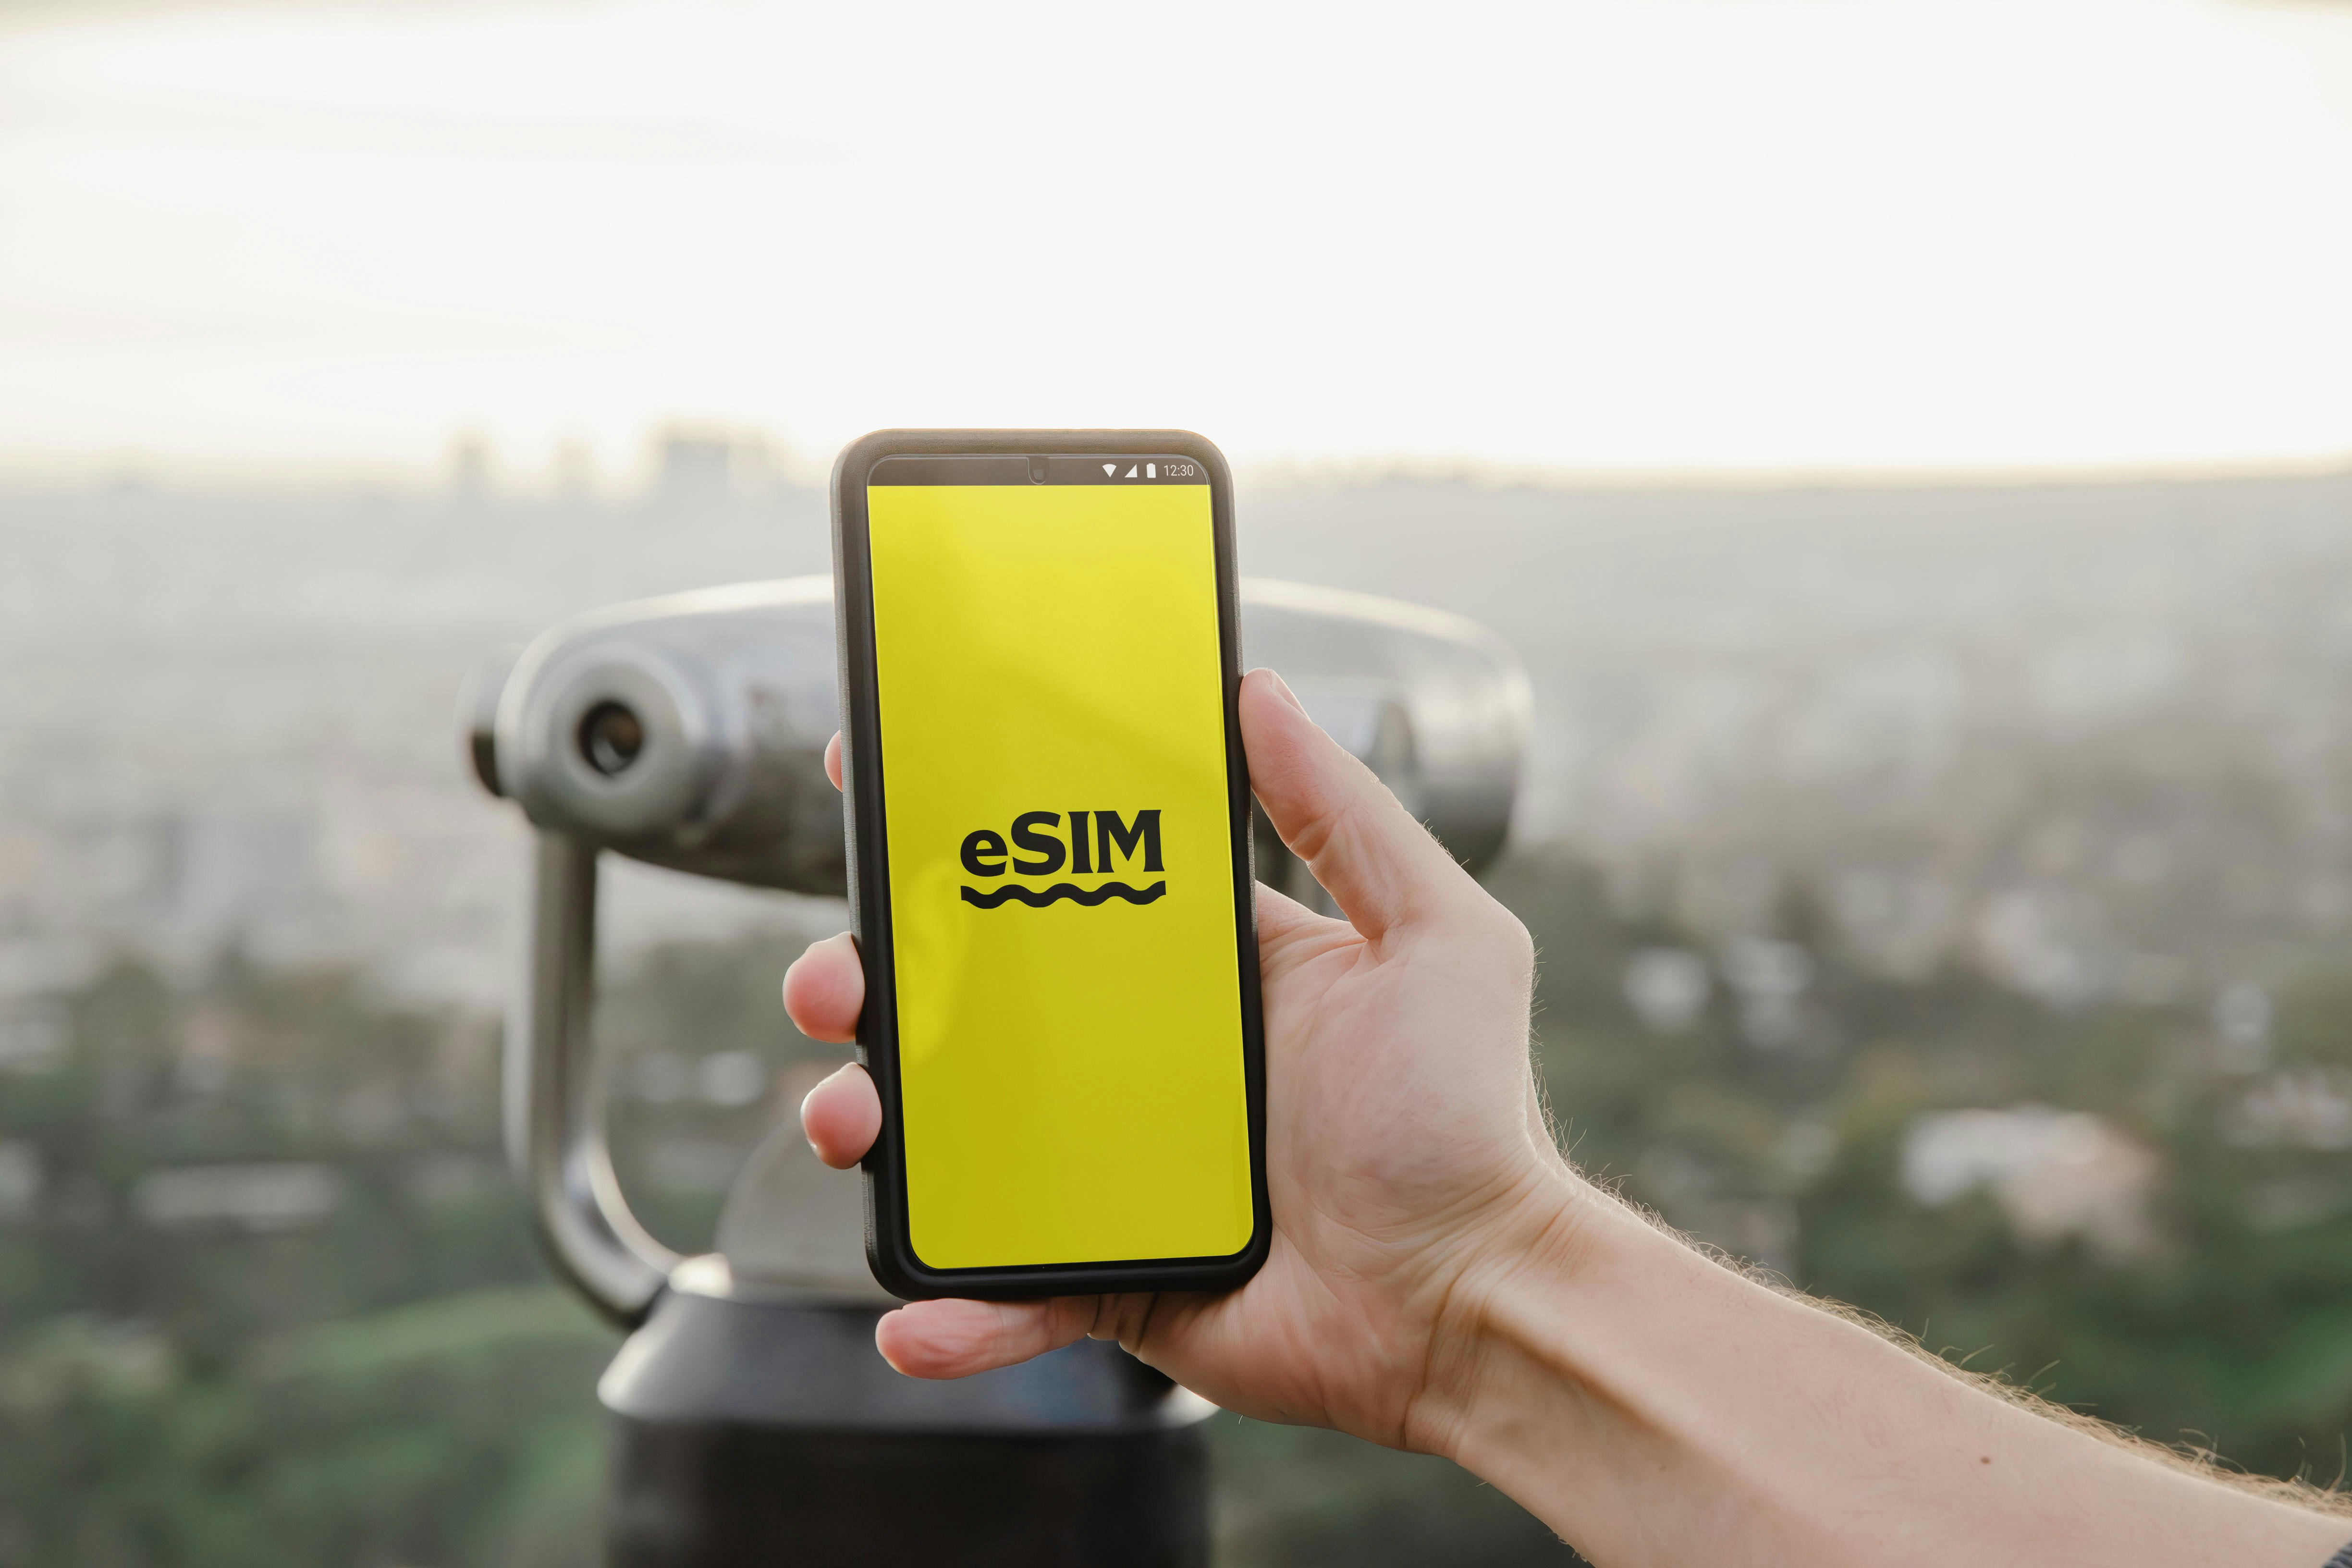 كيفية نقل eSIM إلى جهاز جديد؟ - صورة الأخبار على imei.info